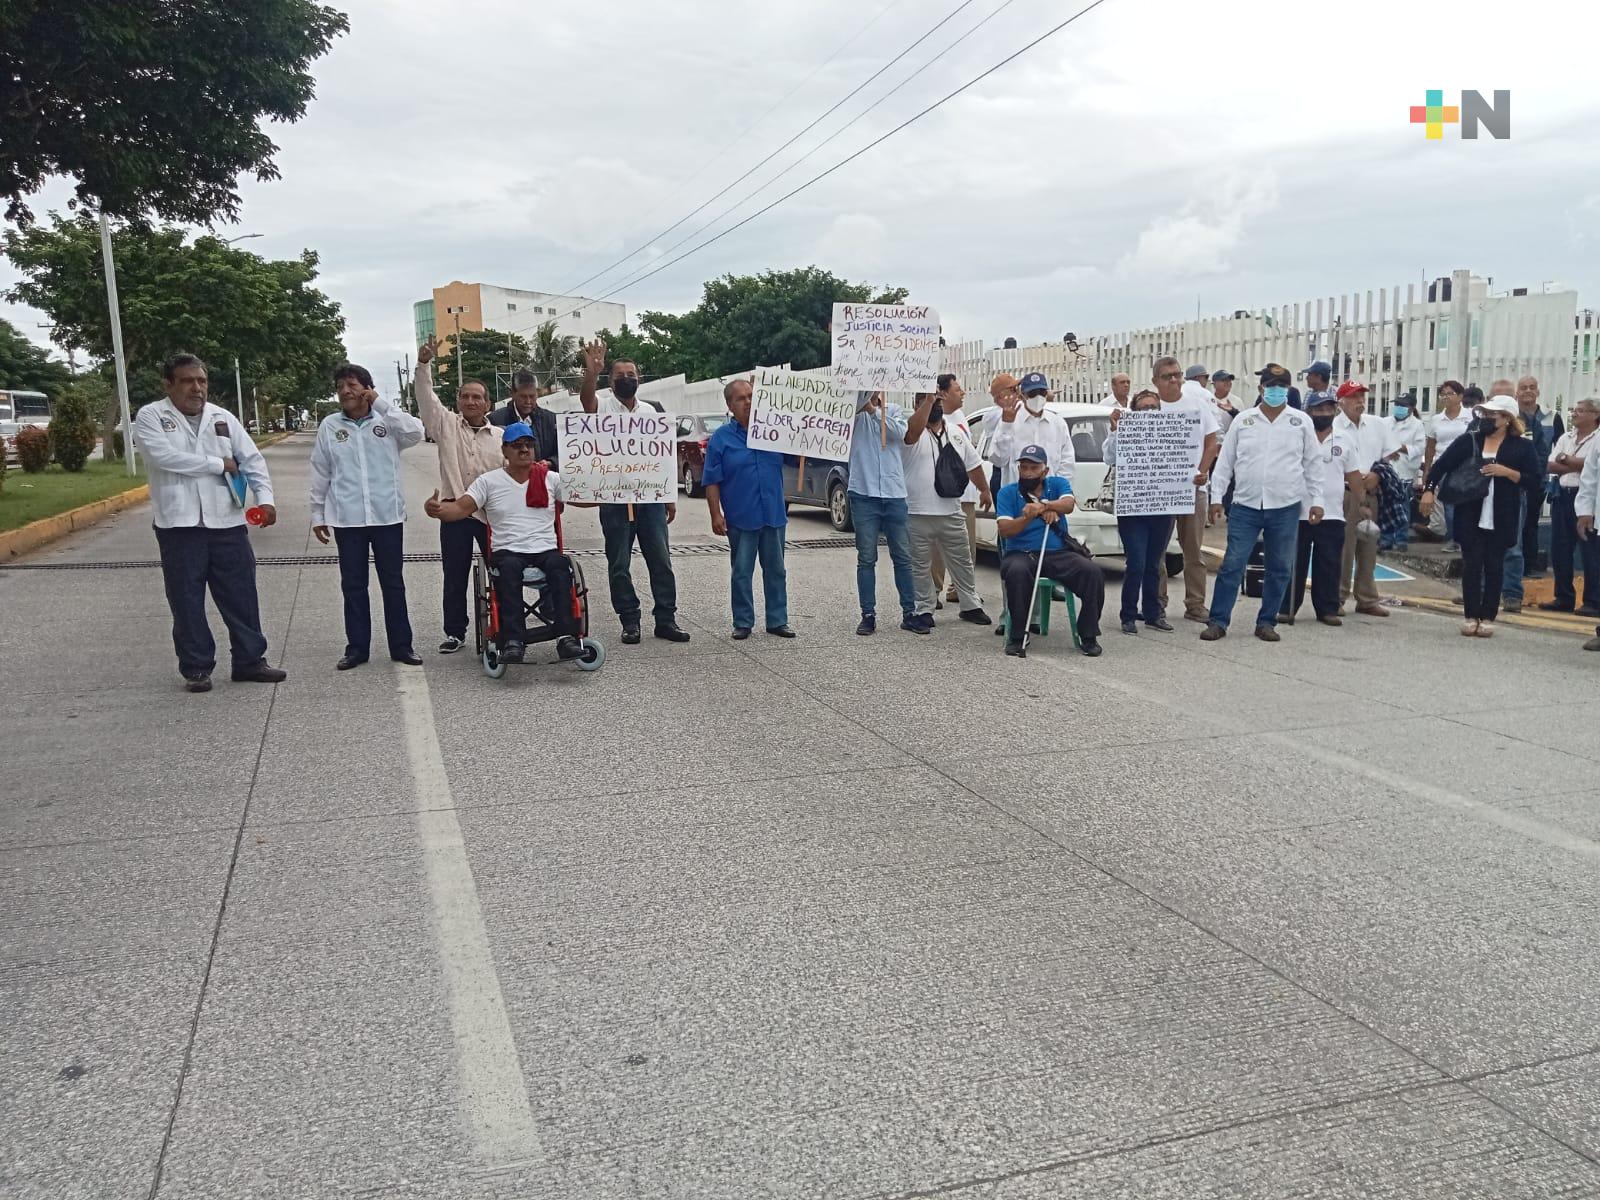 Extrabajadores portuarios se manifiestan en Veracruz puerto